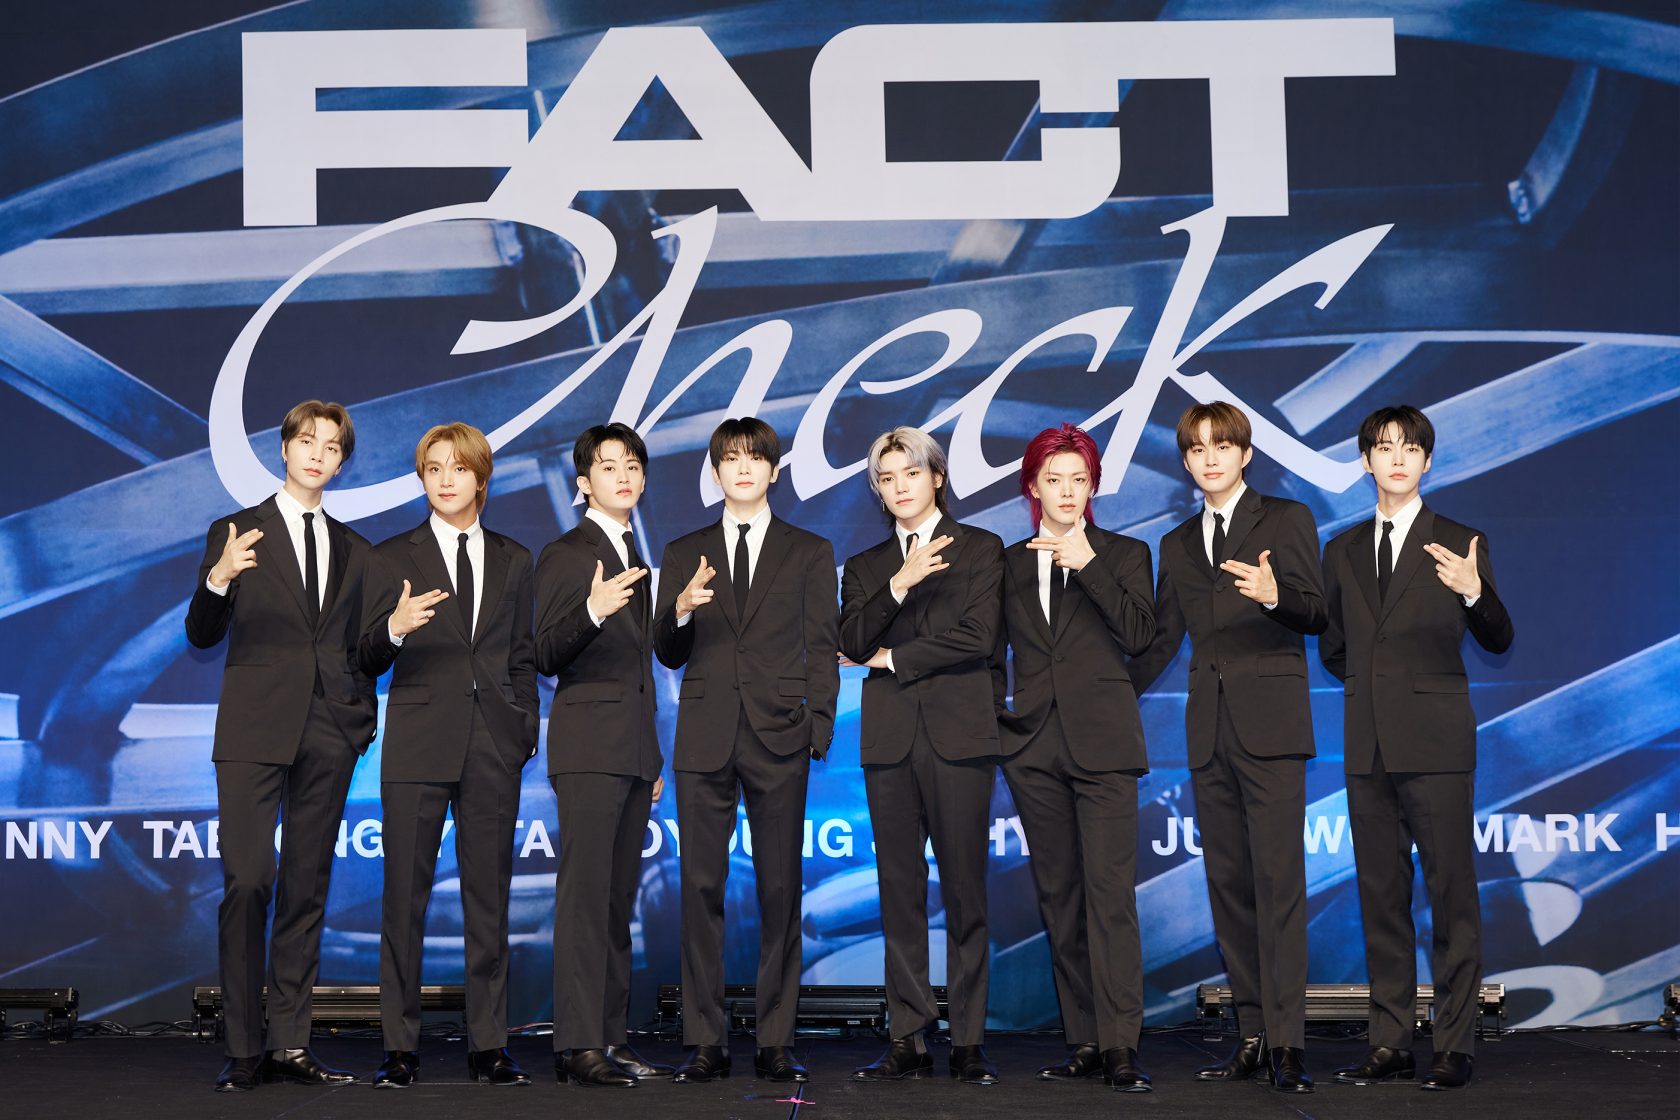 NCT127 史上最高のアルバムが完成!5thフルアルバム「Fact Check」をリリース